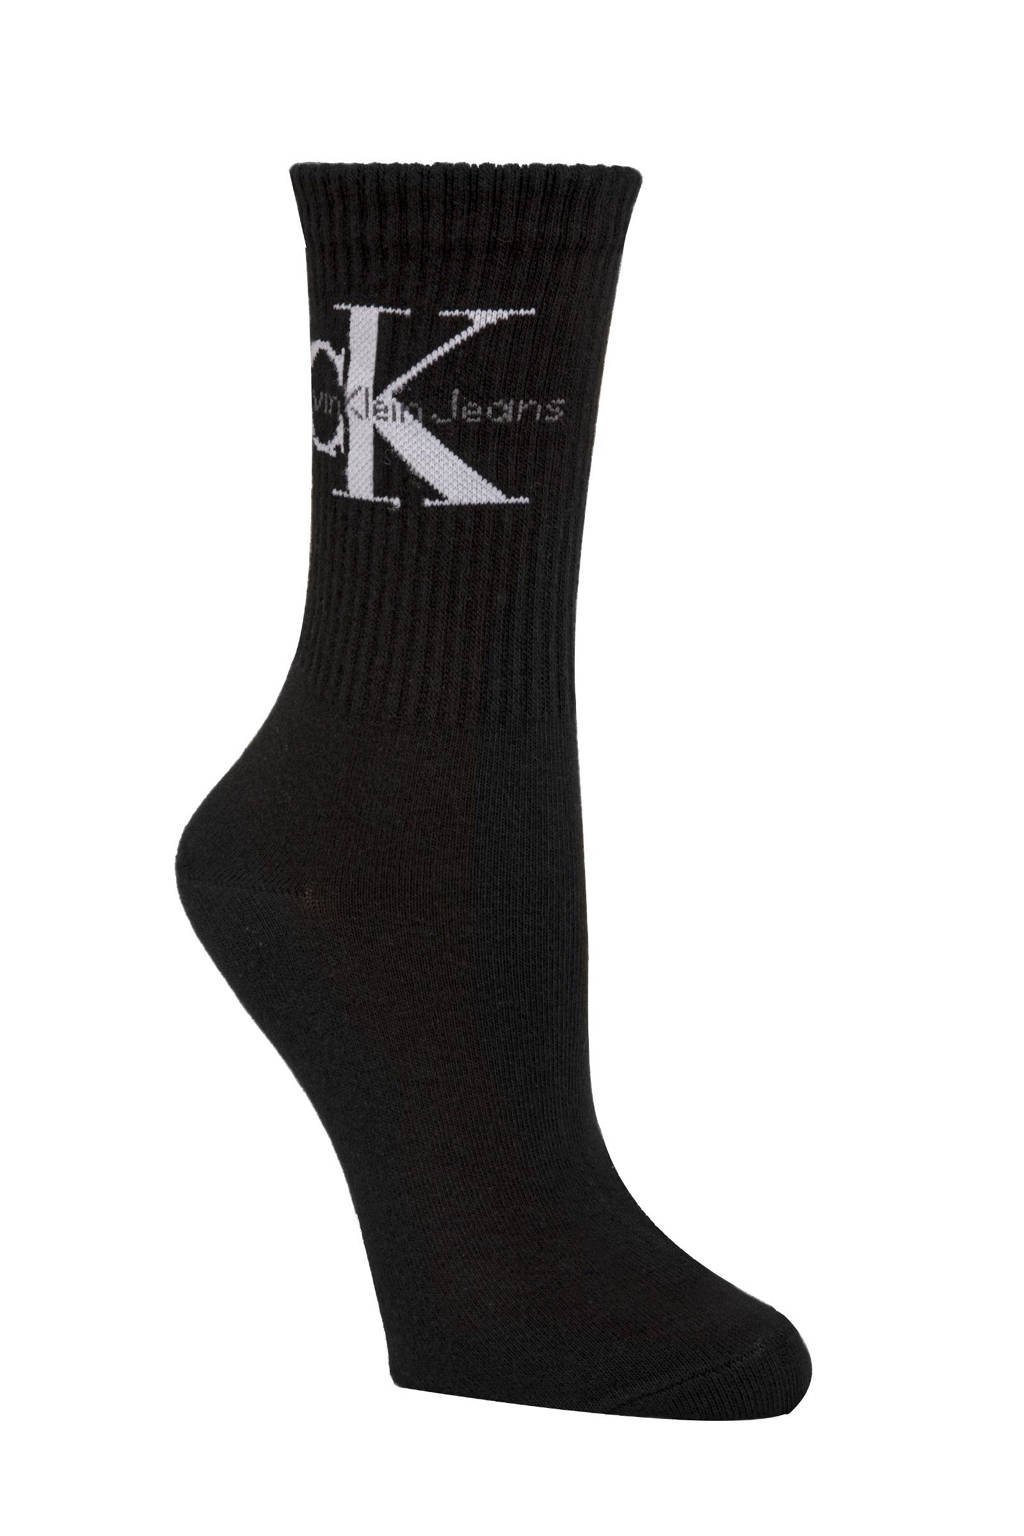 offset meer en meer Museum Calvin Klein sokken zwart kopen? | Morgen in huis | wehkamp